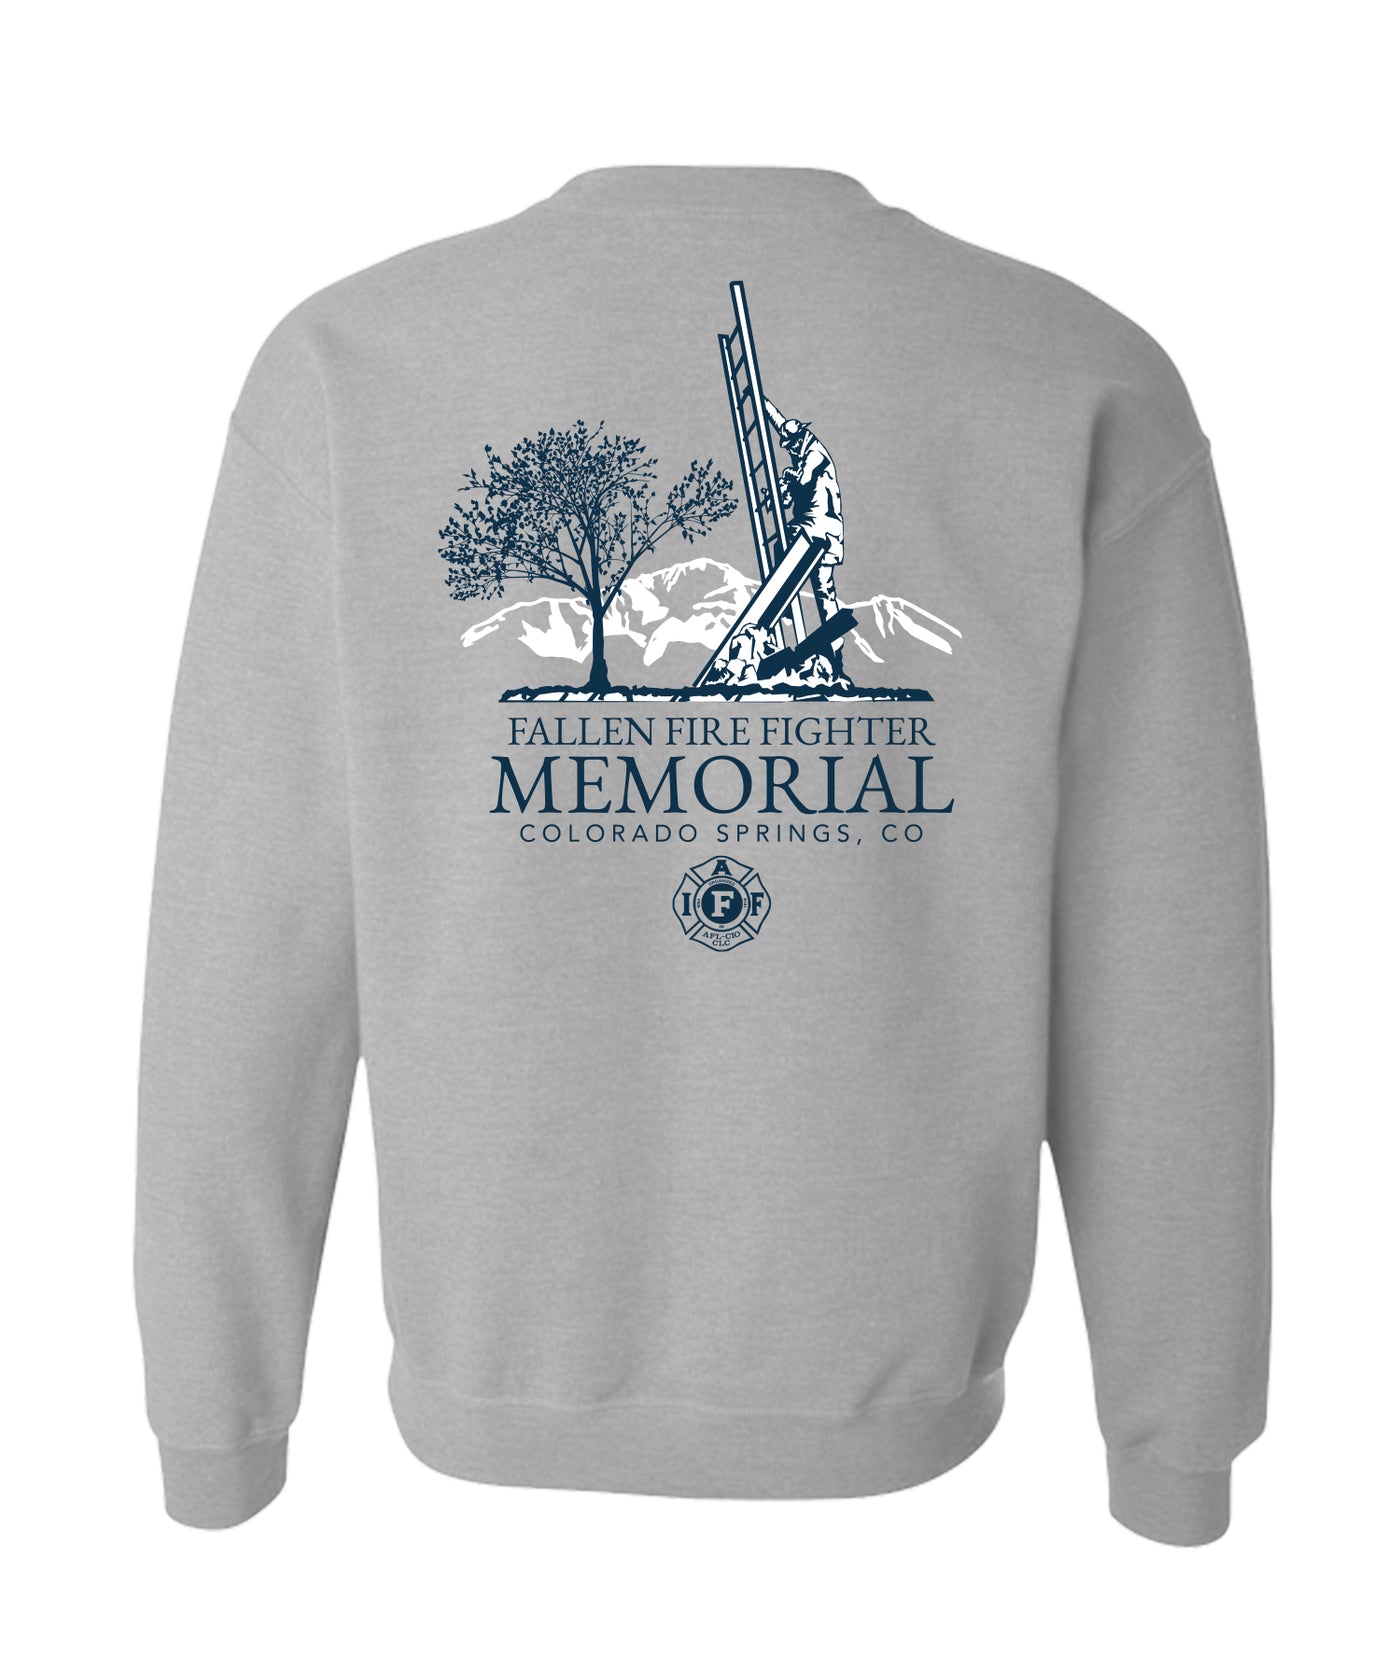 Fallen Fire Fighter Memorial Crewneck Sweatshirt